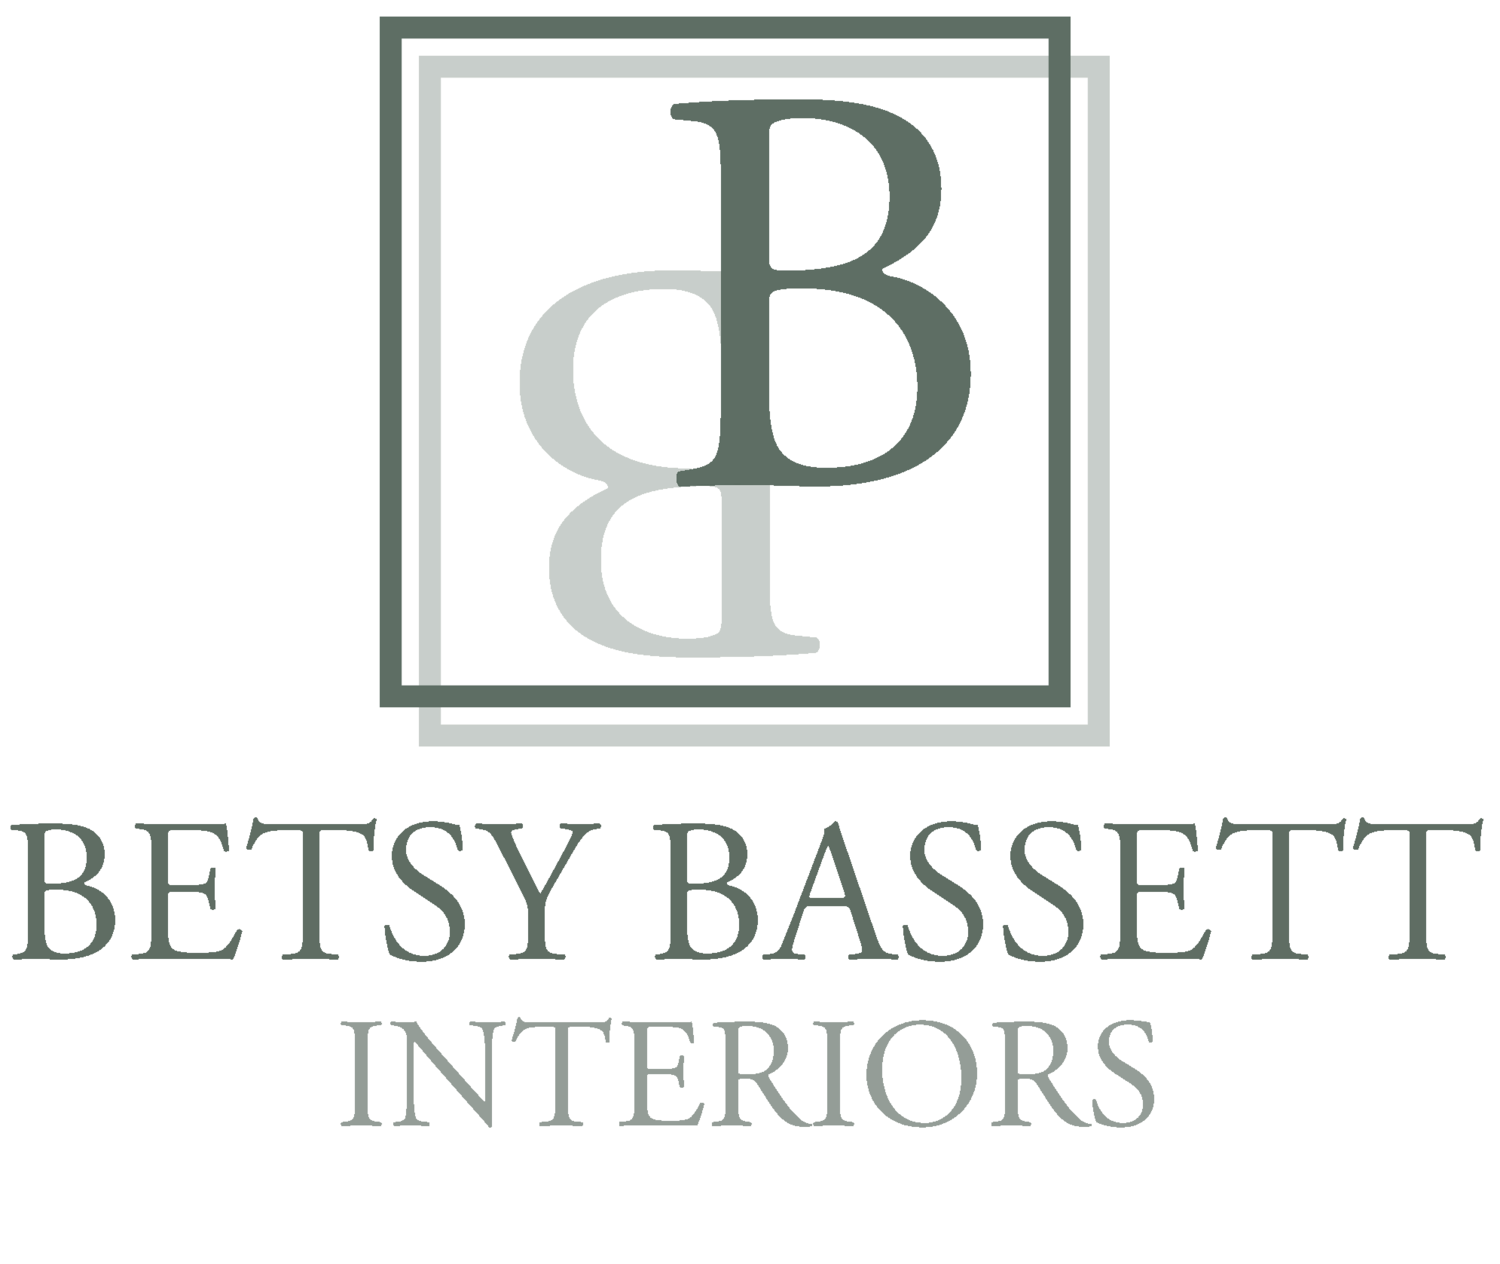 Betsy Bassett Interiors